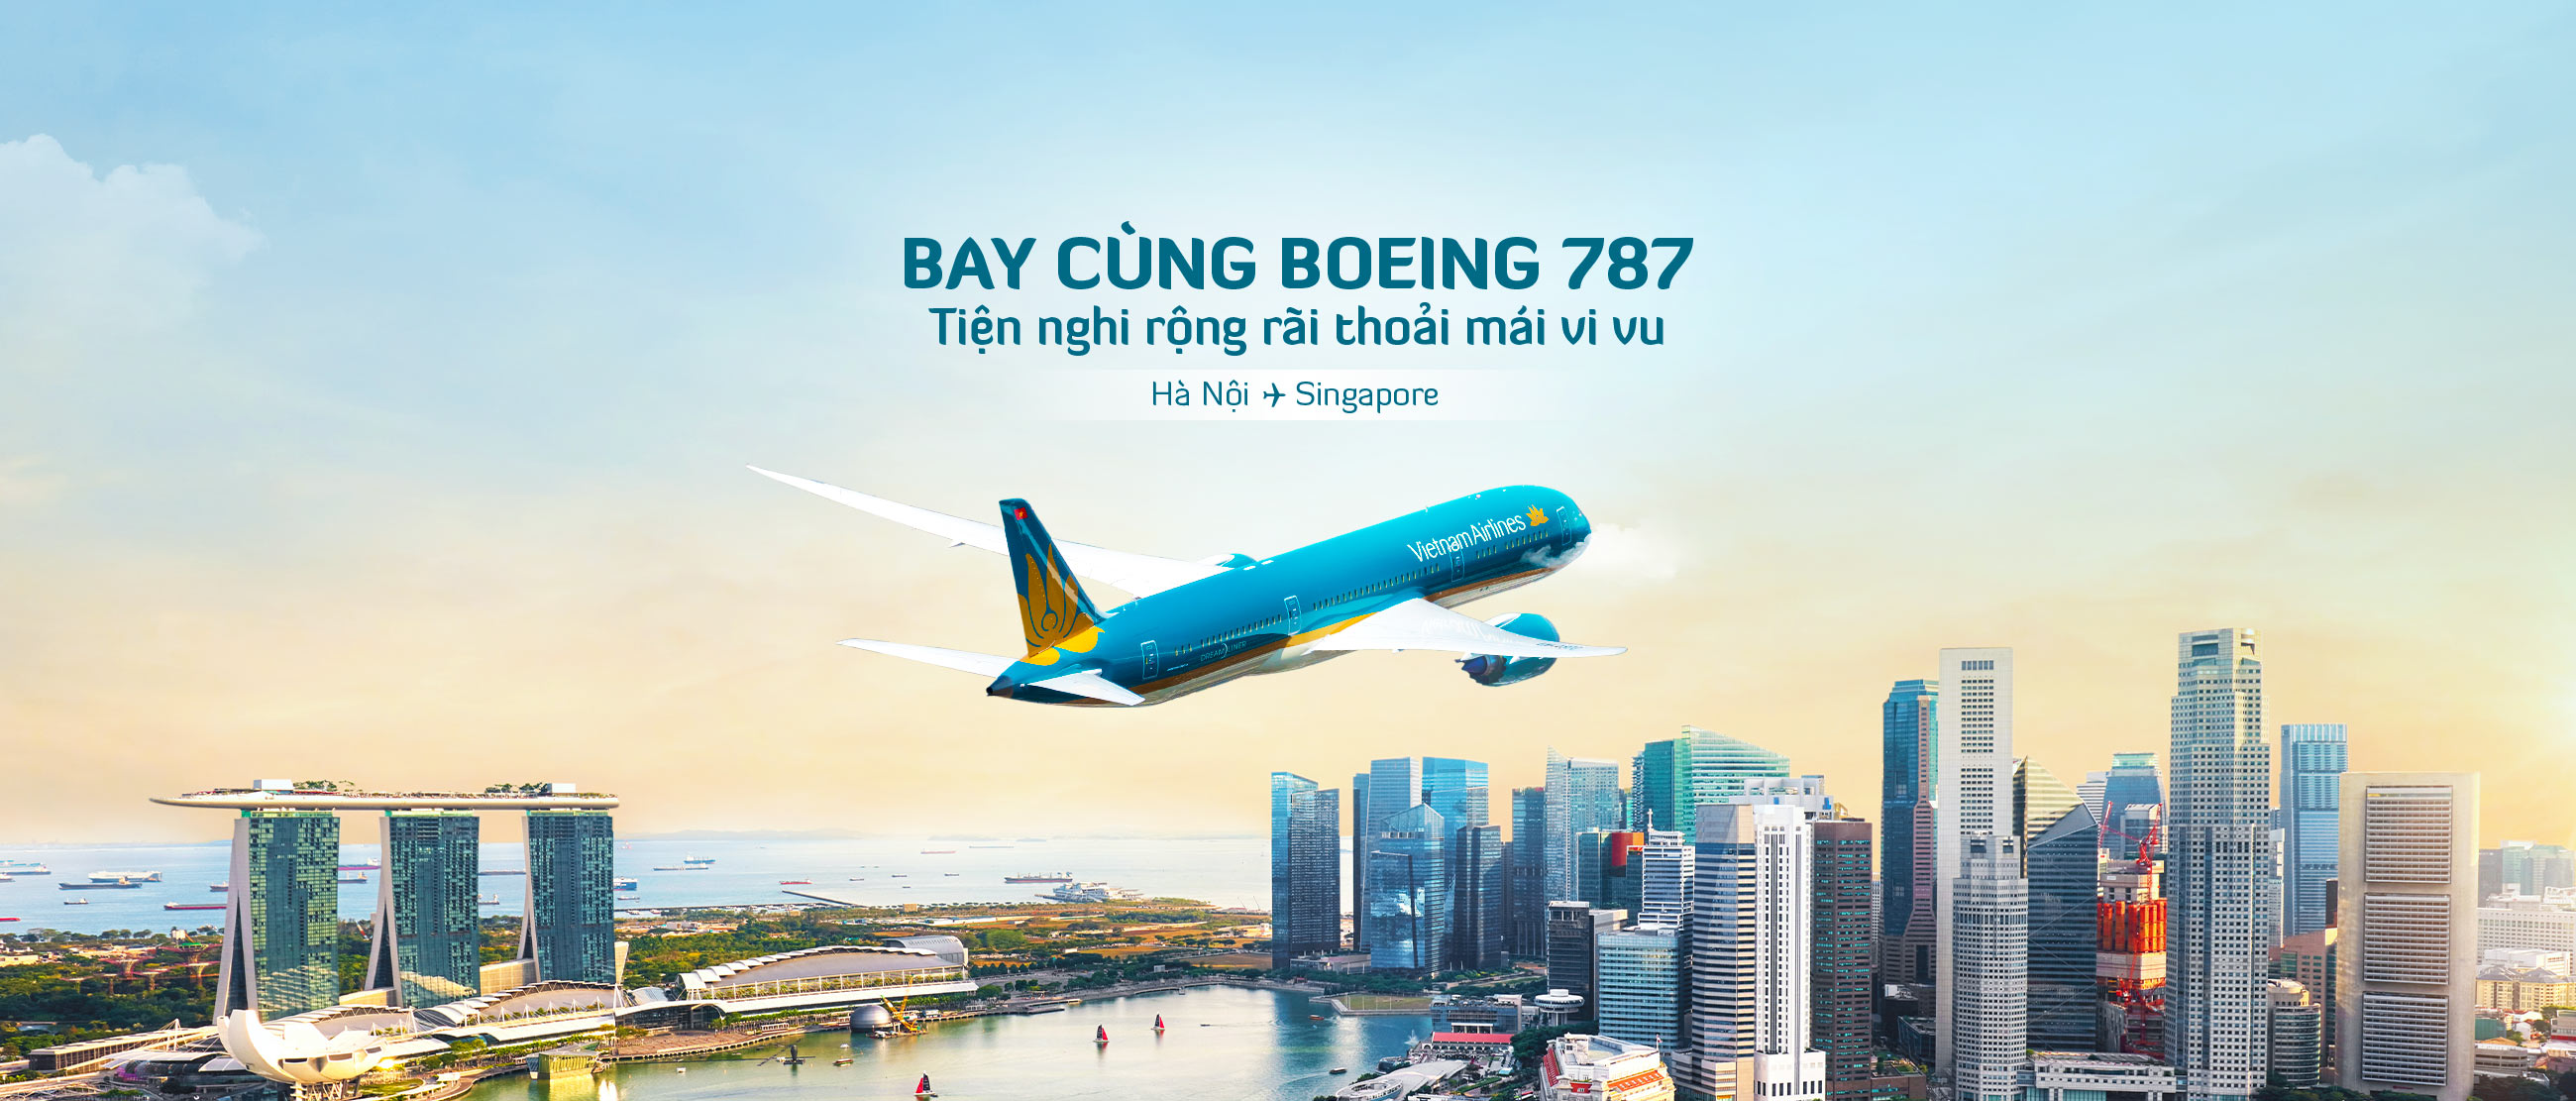 Vietnam Airlines ưu đãi cho vé mua theo nhóm